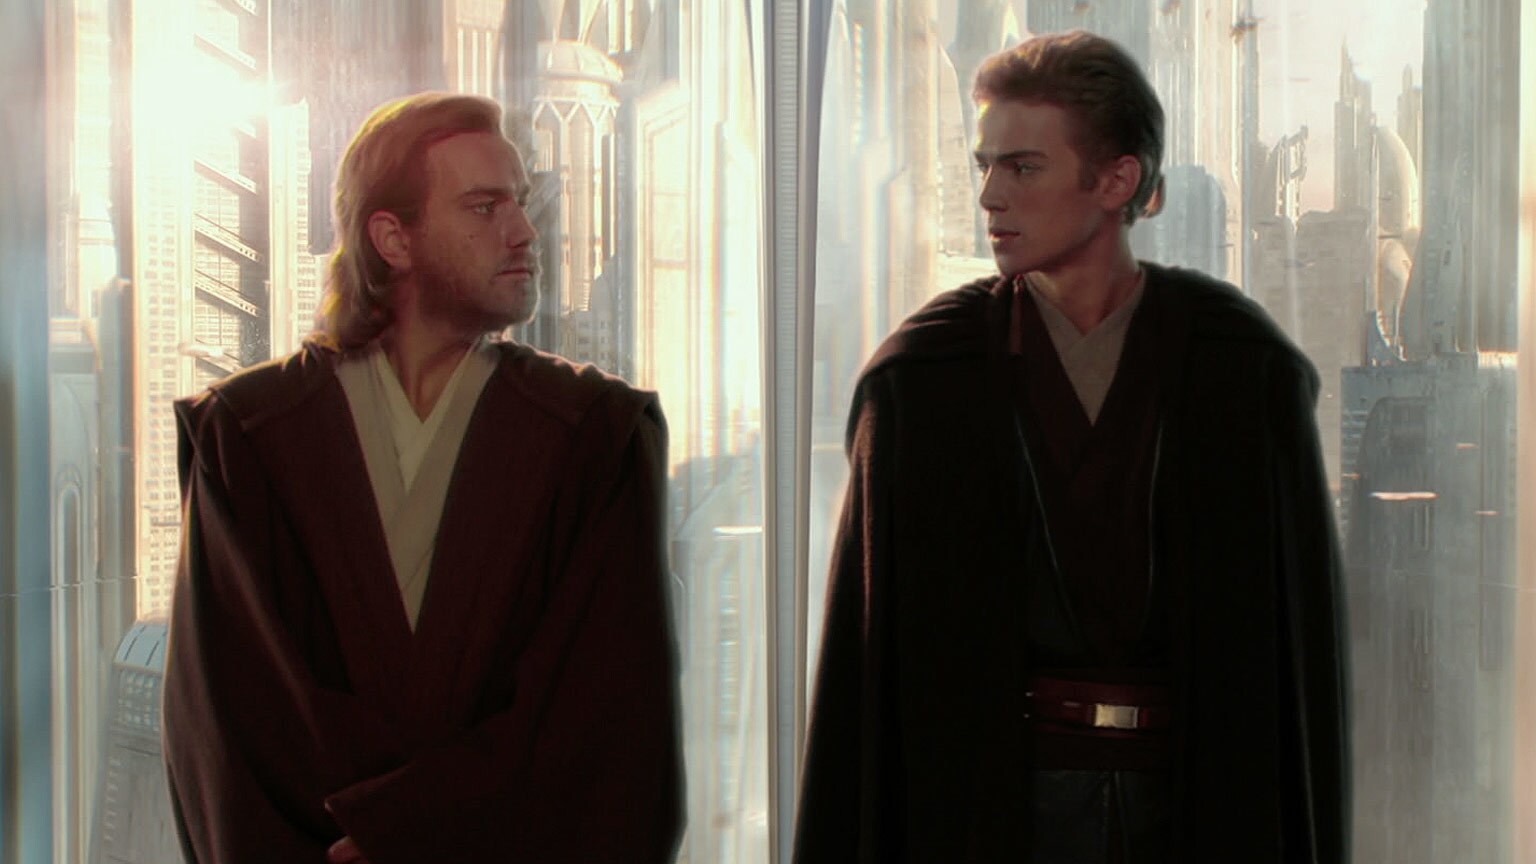 Ewan McGregor's Obi Wan with Christensen's Anakin Skywalker